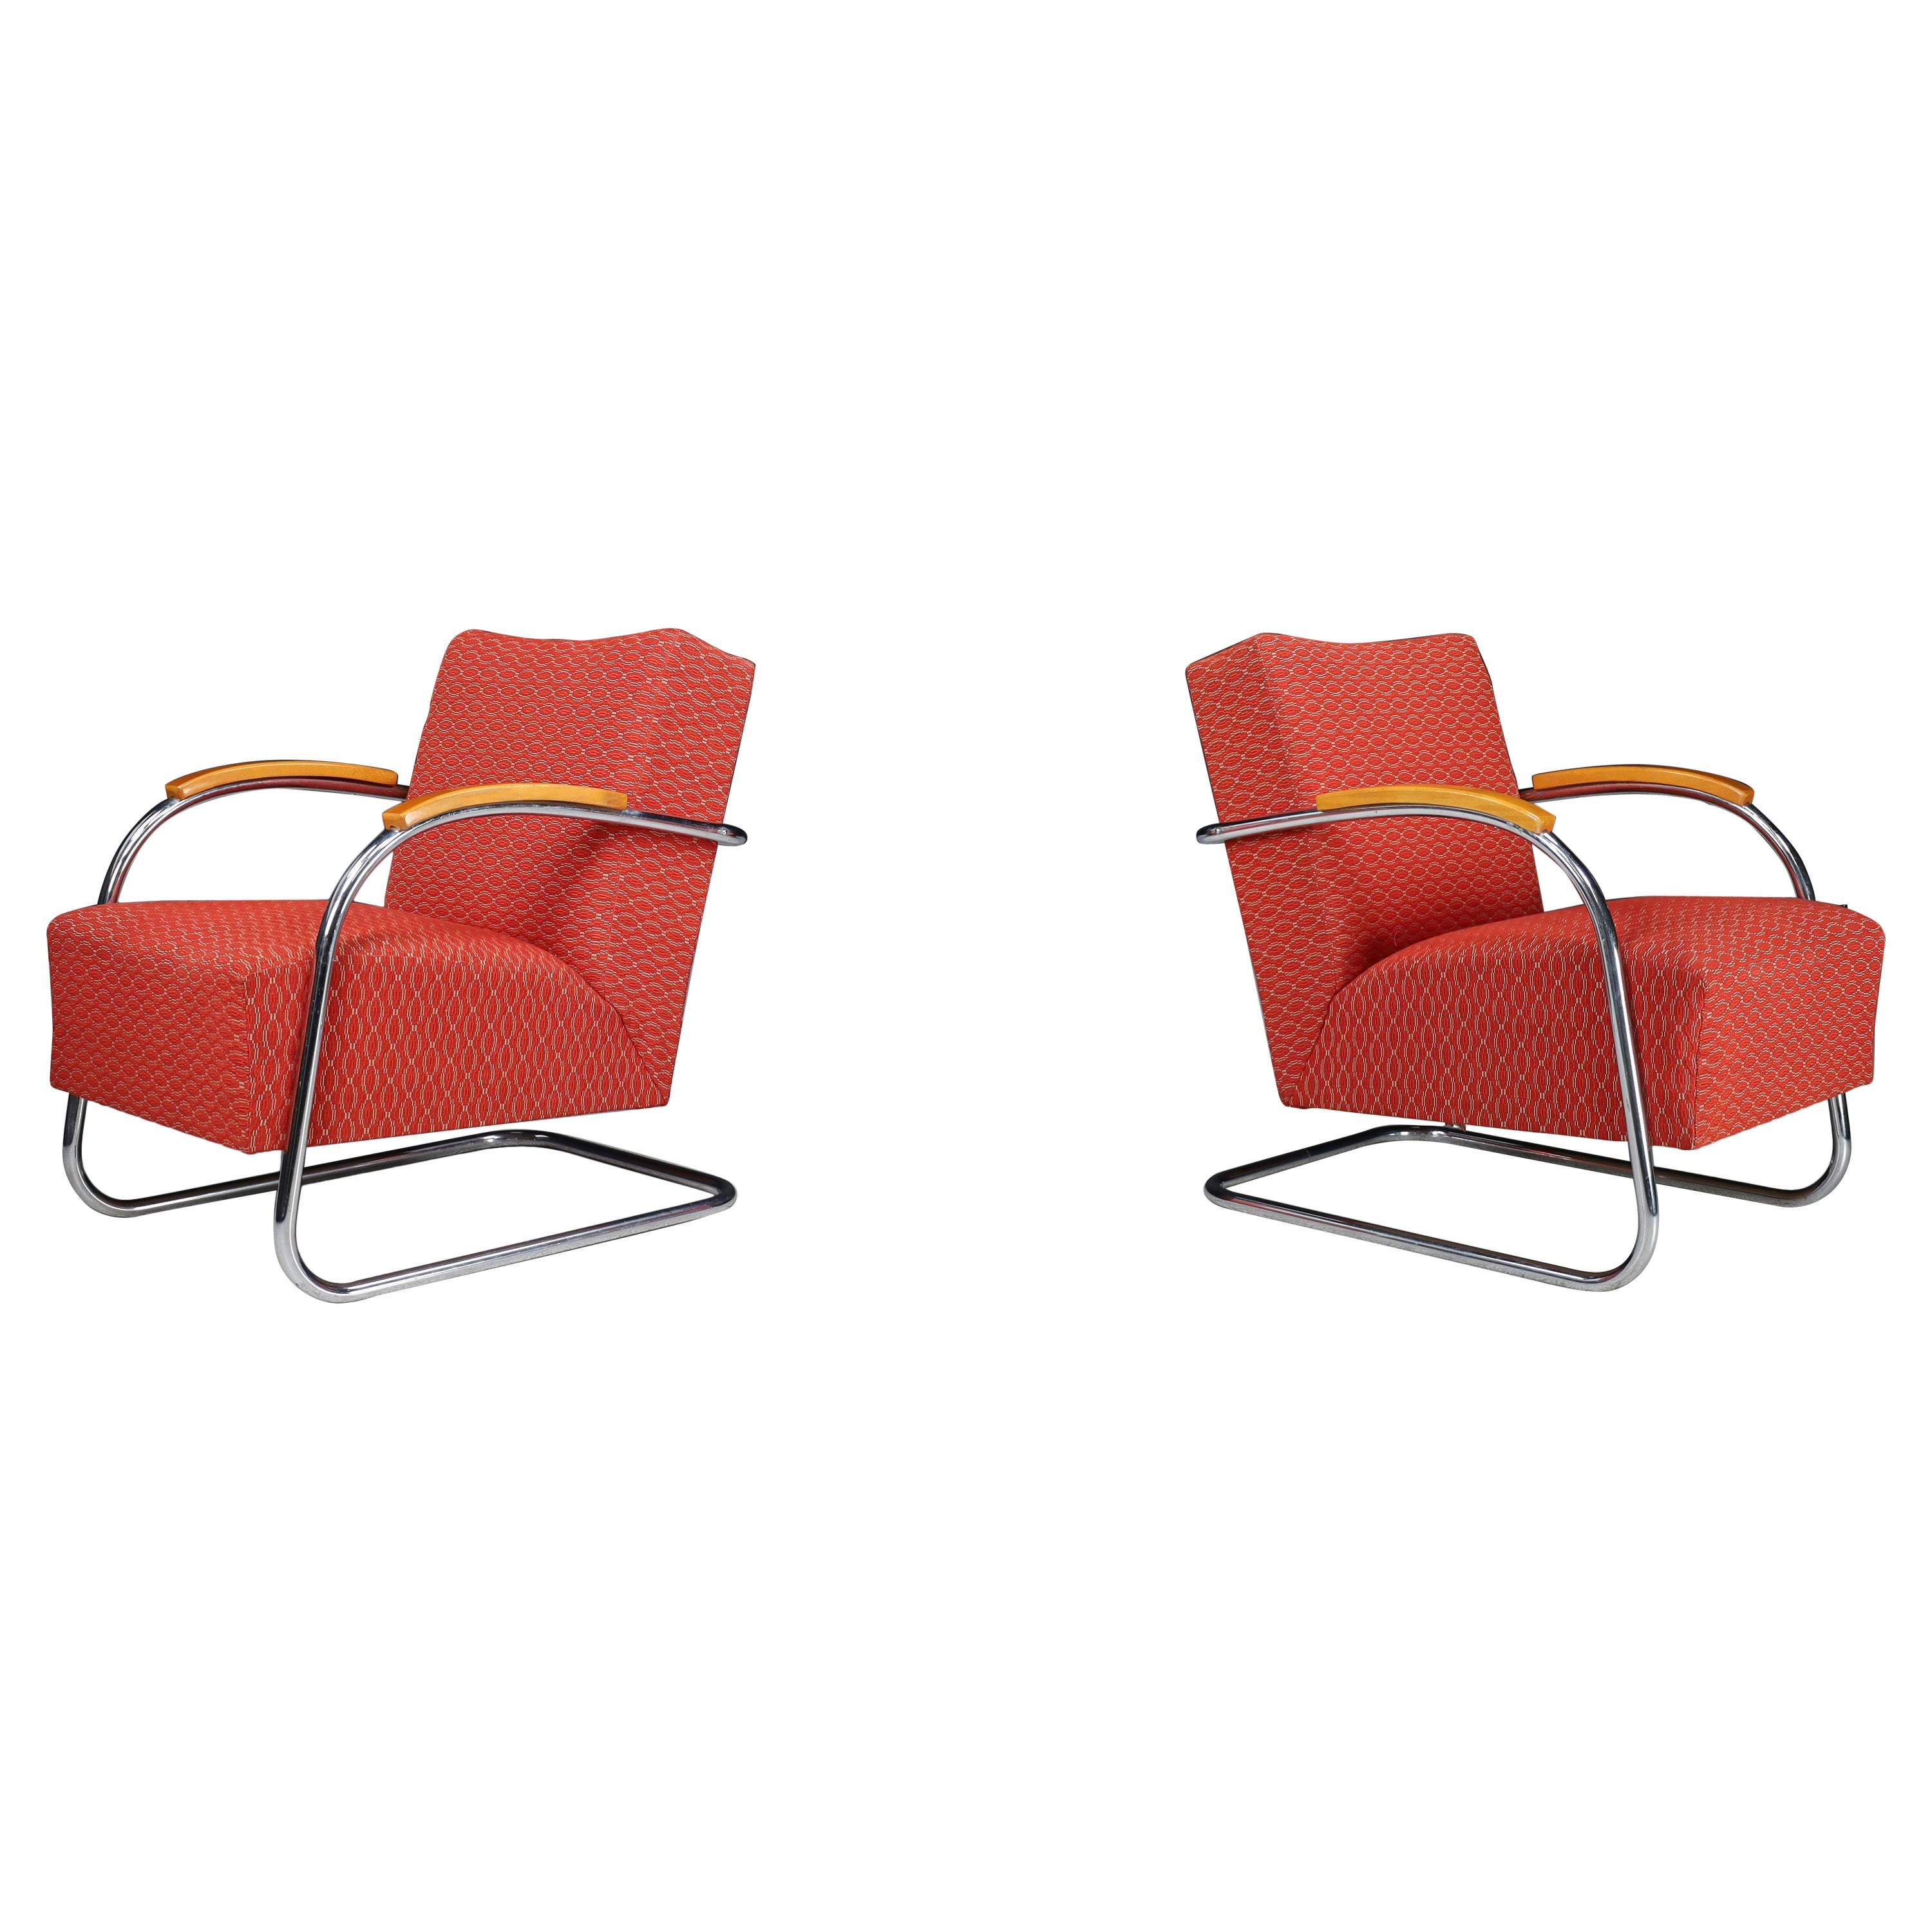 Mucke & Melder Bauhaus Original Upholstered Armchairs, Czech Republic 1930s  